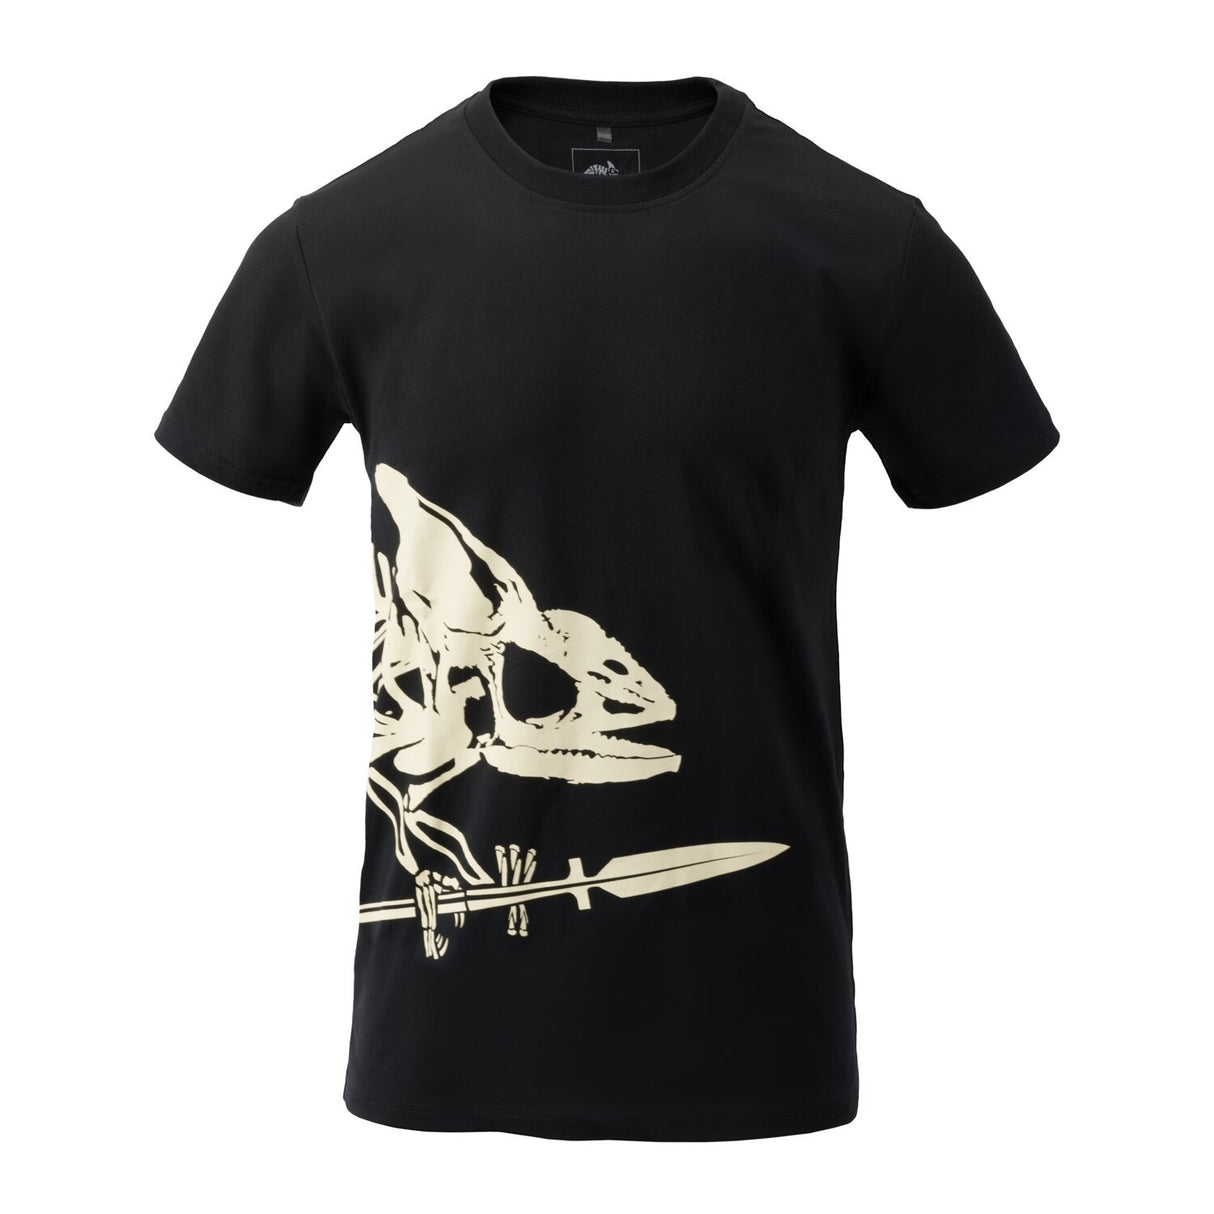 Helikon-Tex Full Body Skeleton T-shirt